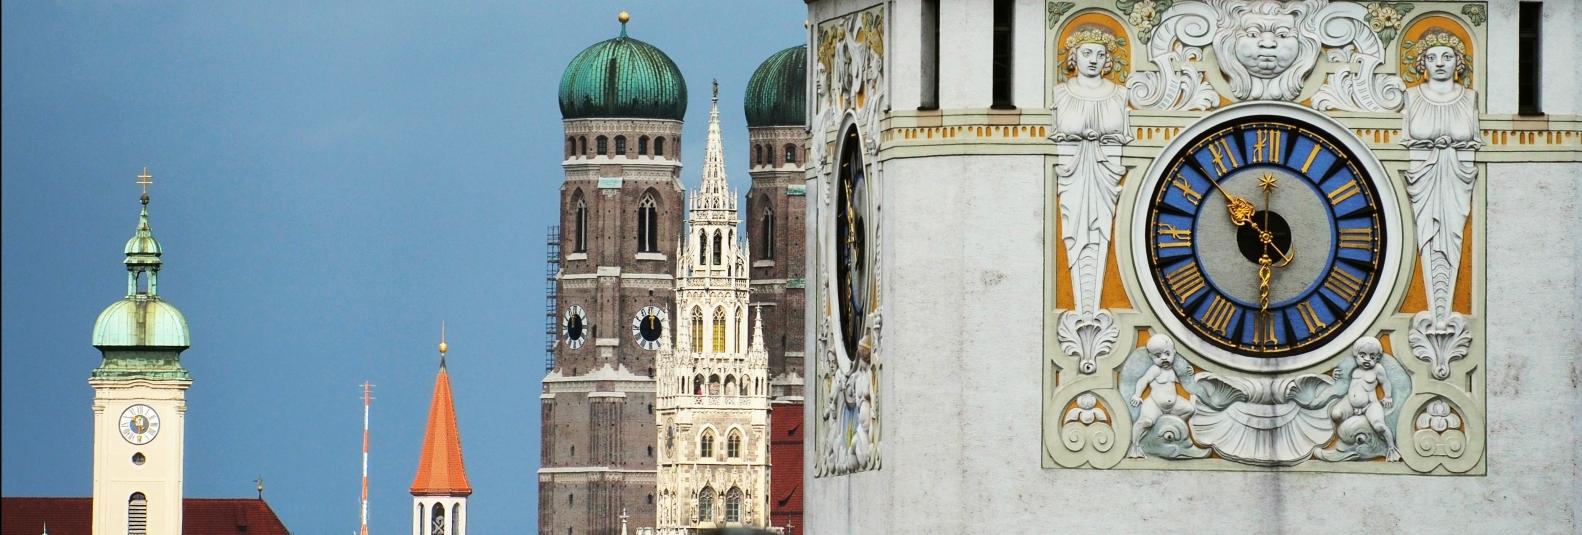 Blick auf Münchner Altstadttürme von einem öffentlichen Gebäude aus